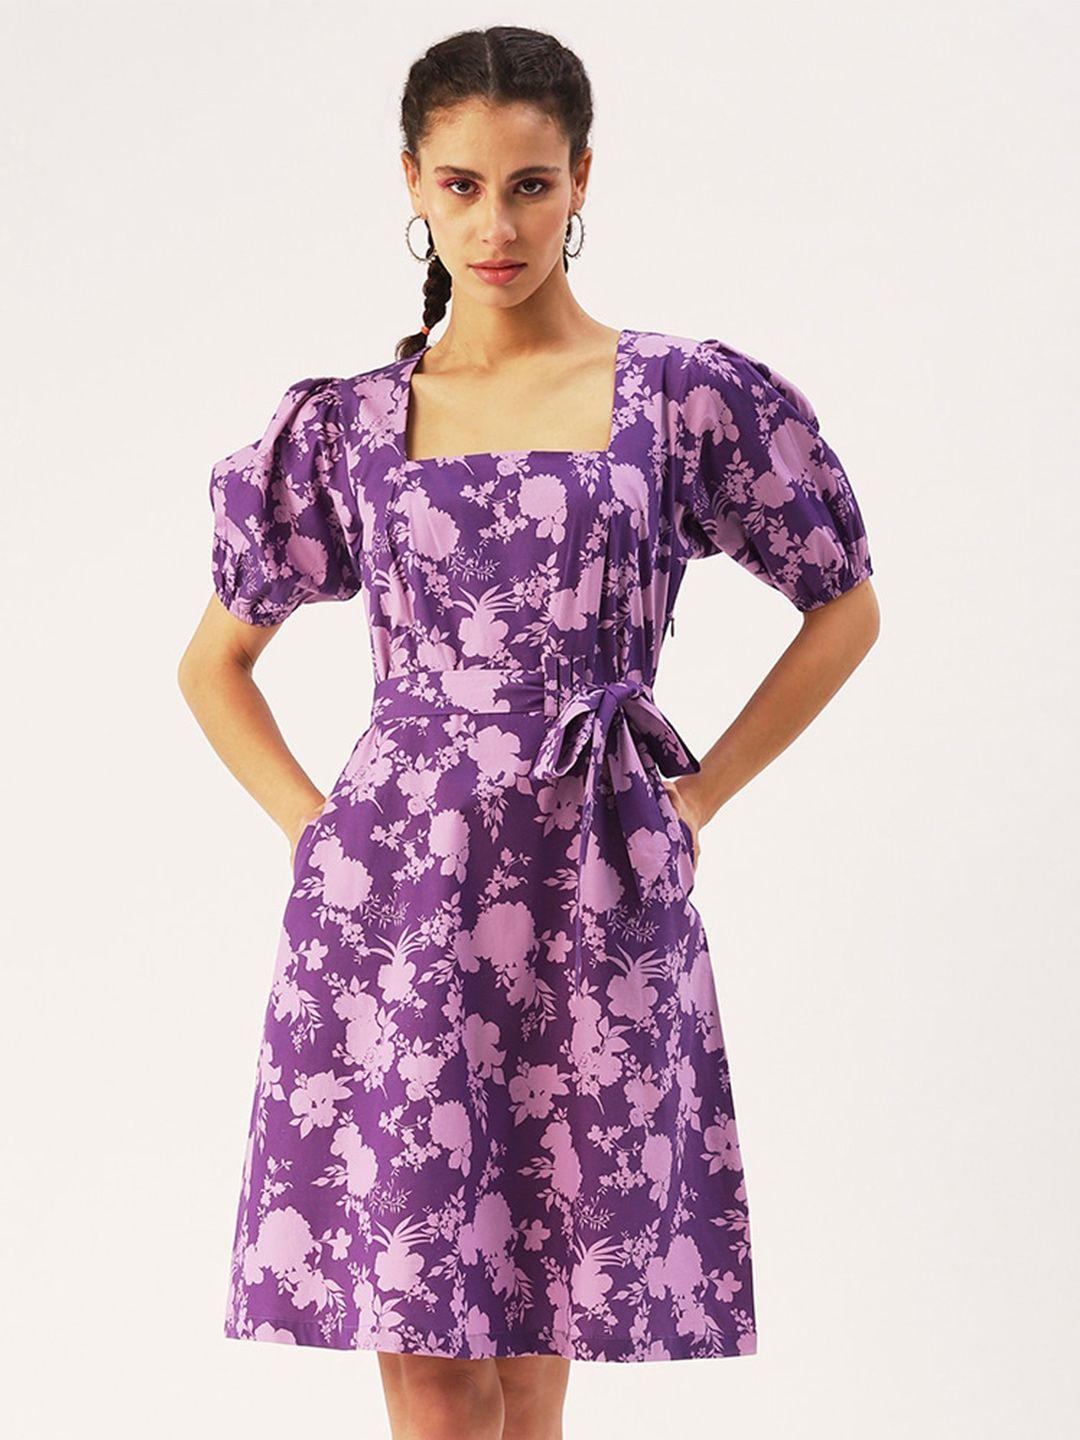 dressberry purple floral dress